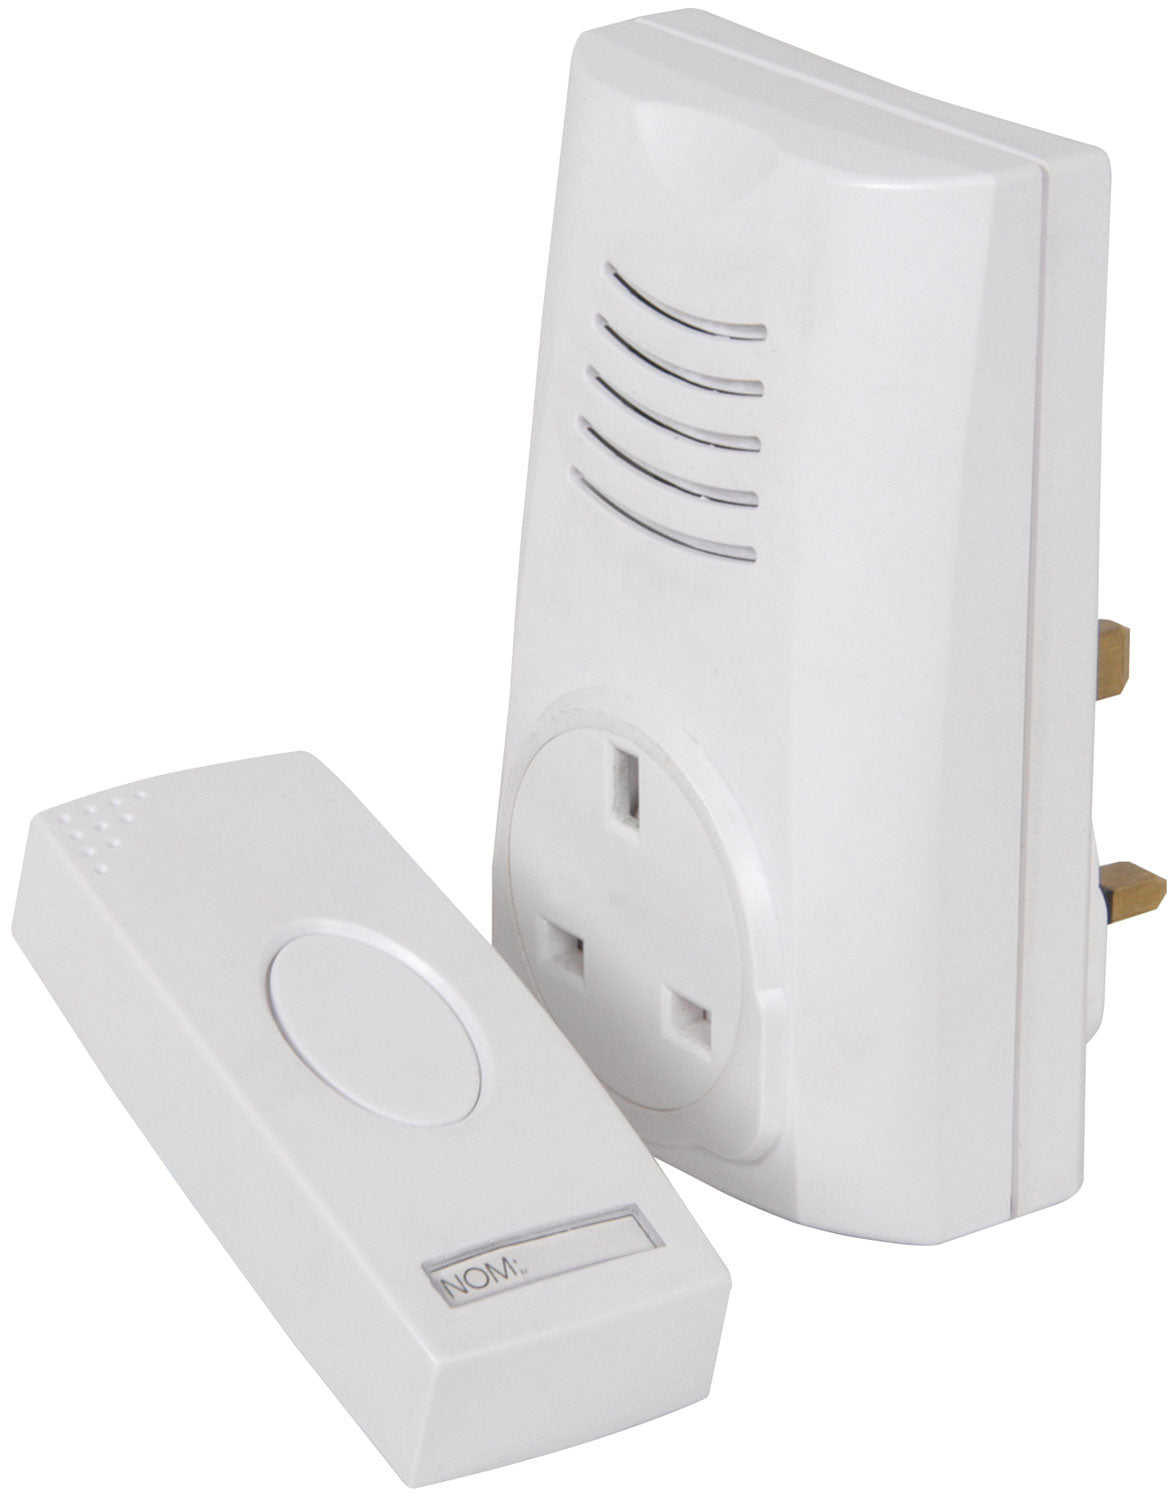 Mercury Plug In Wireless Door Chime/Bell